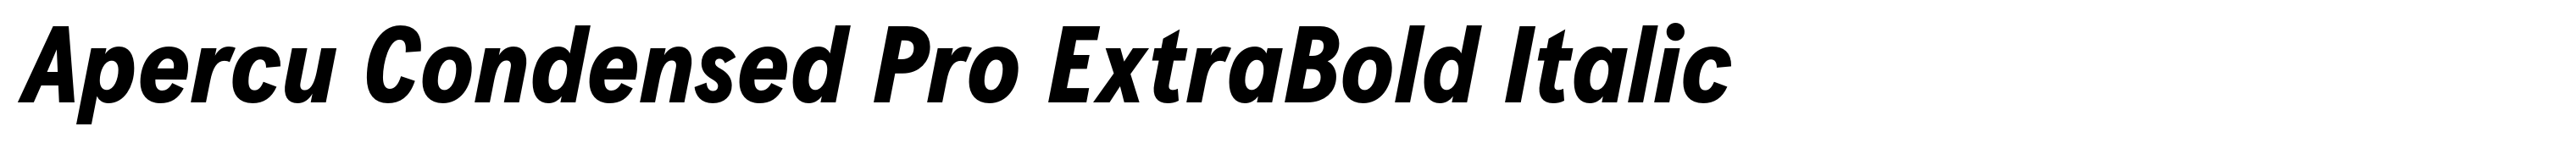 Apercu Condensed Pro ExtraBold Italic